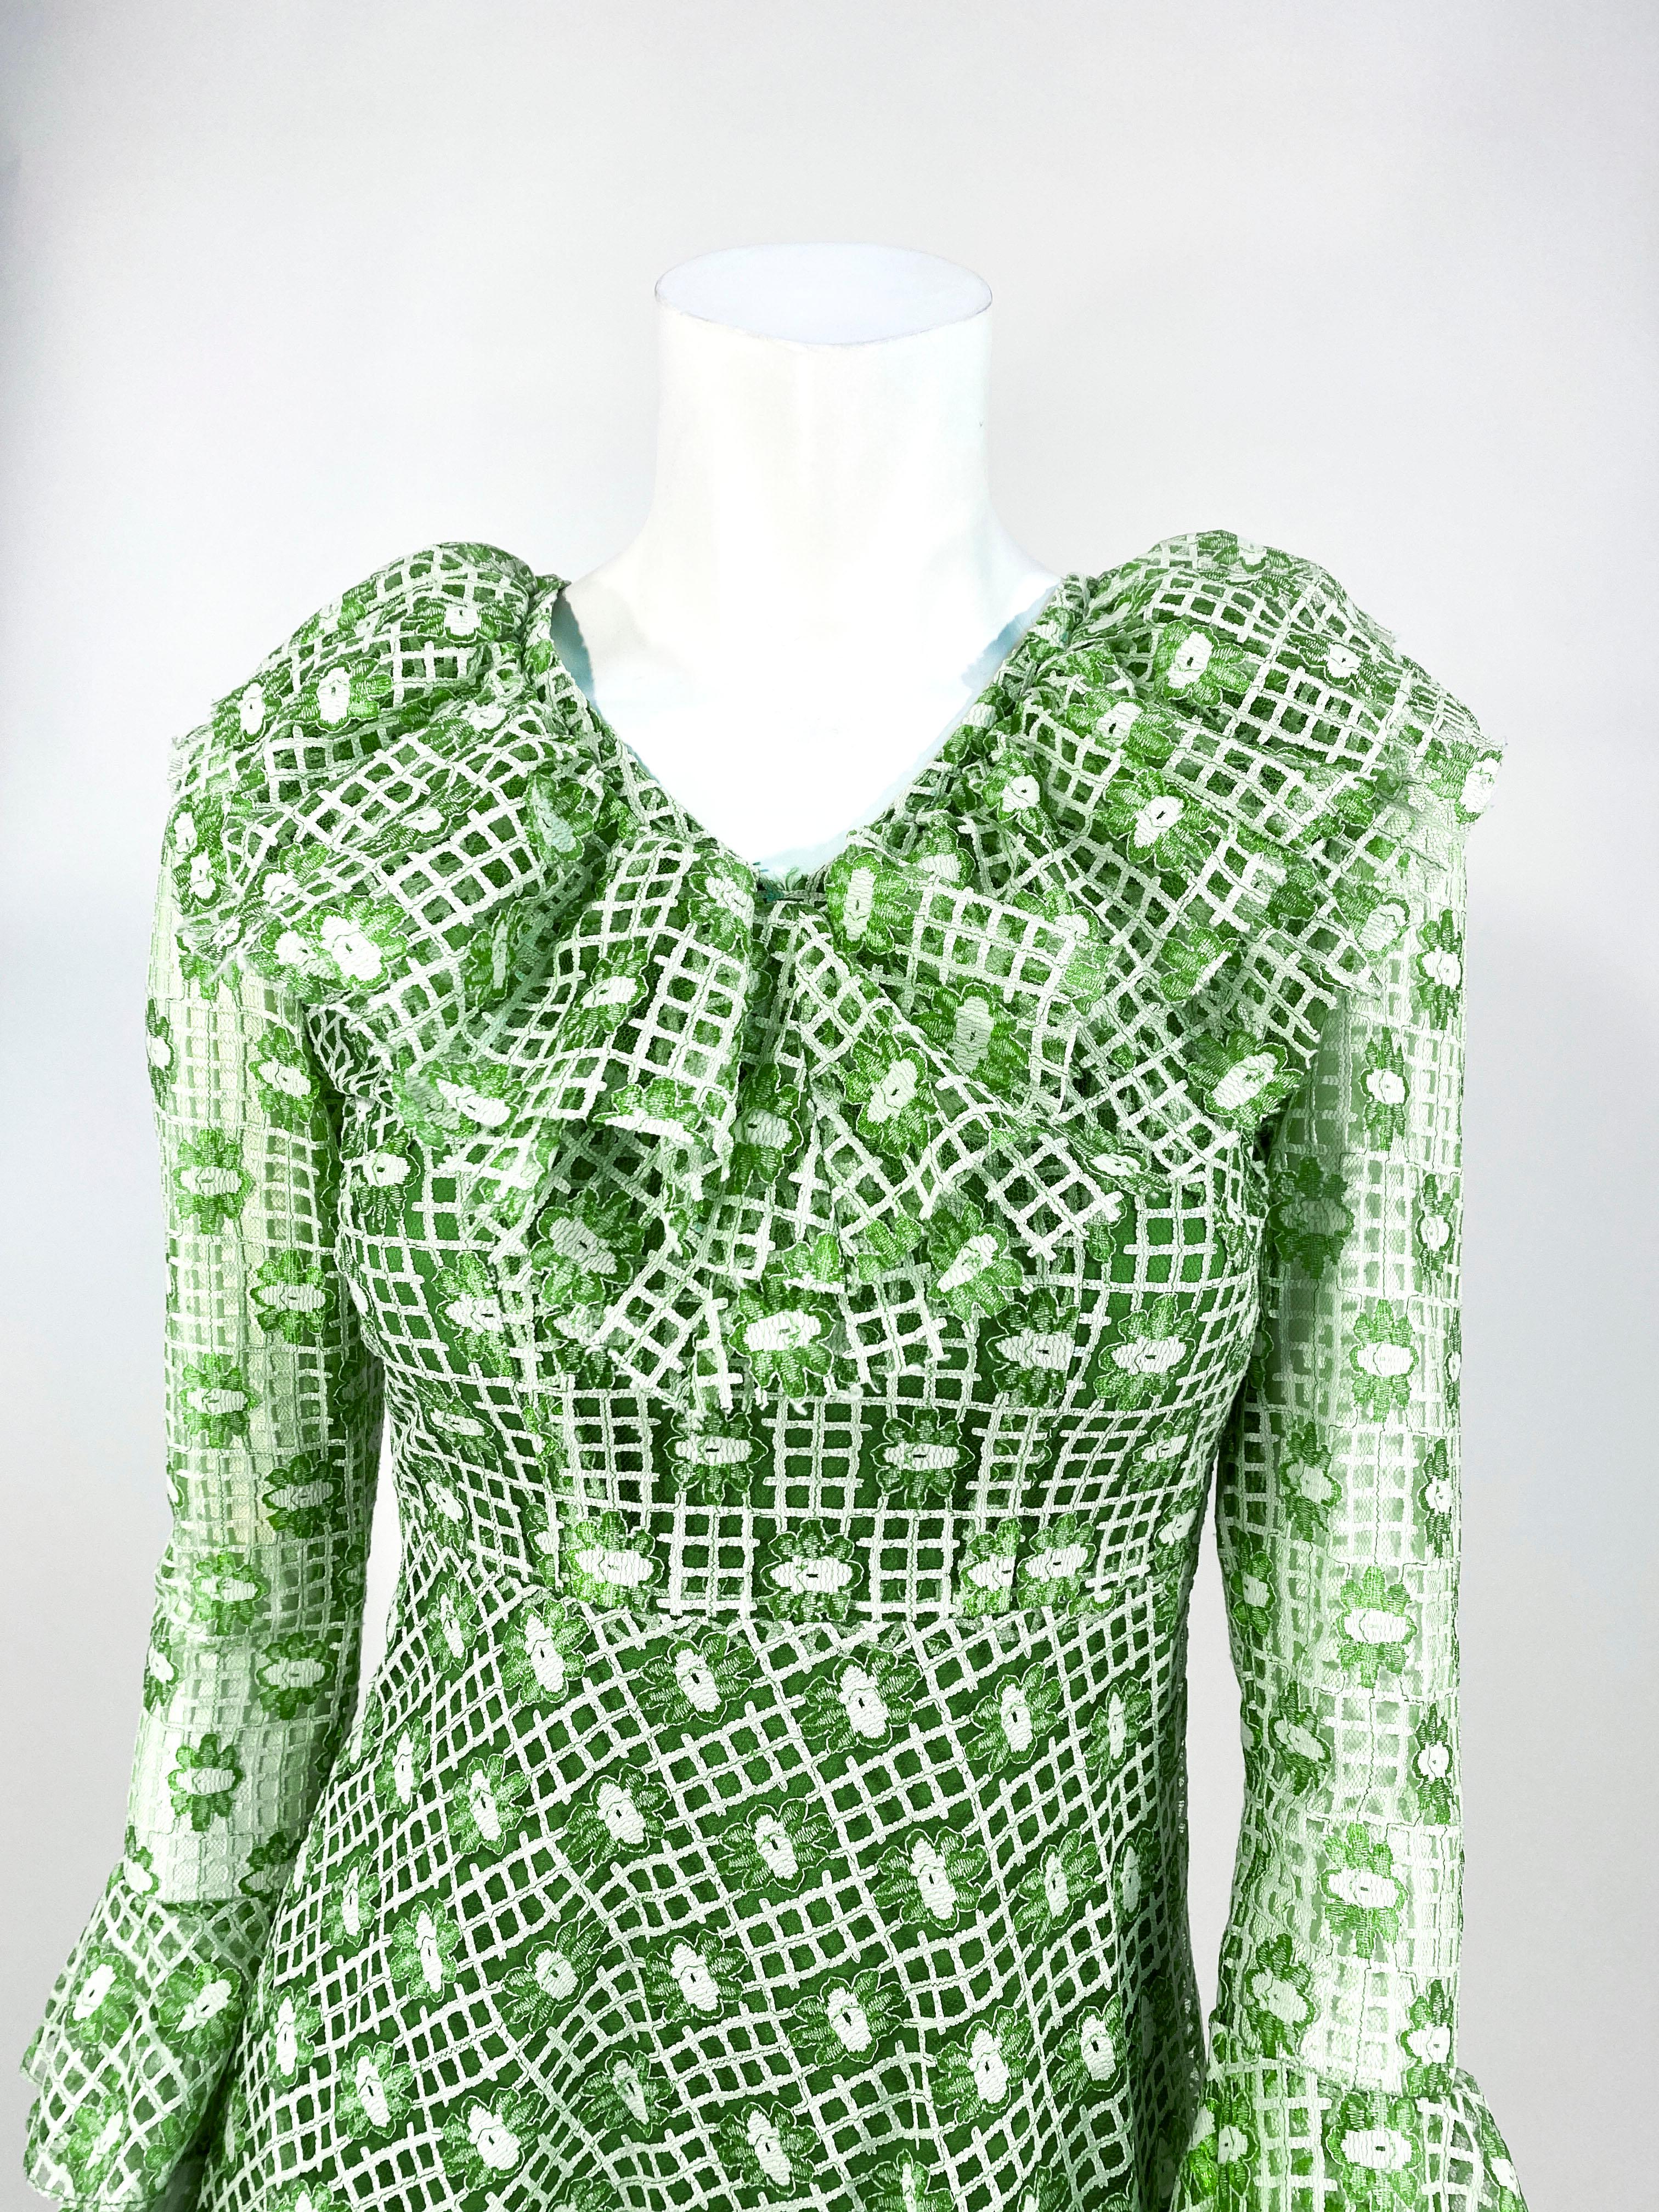 Petite robe en dentelle et maille machine verte de la fin des années 1960 au début des années 1970, avec un motif à carreaux et à fleurs. Le corps de la robe est entièrement doublé et les manches sont transparentes. L'encolure et les poignets sont